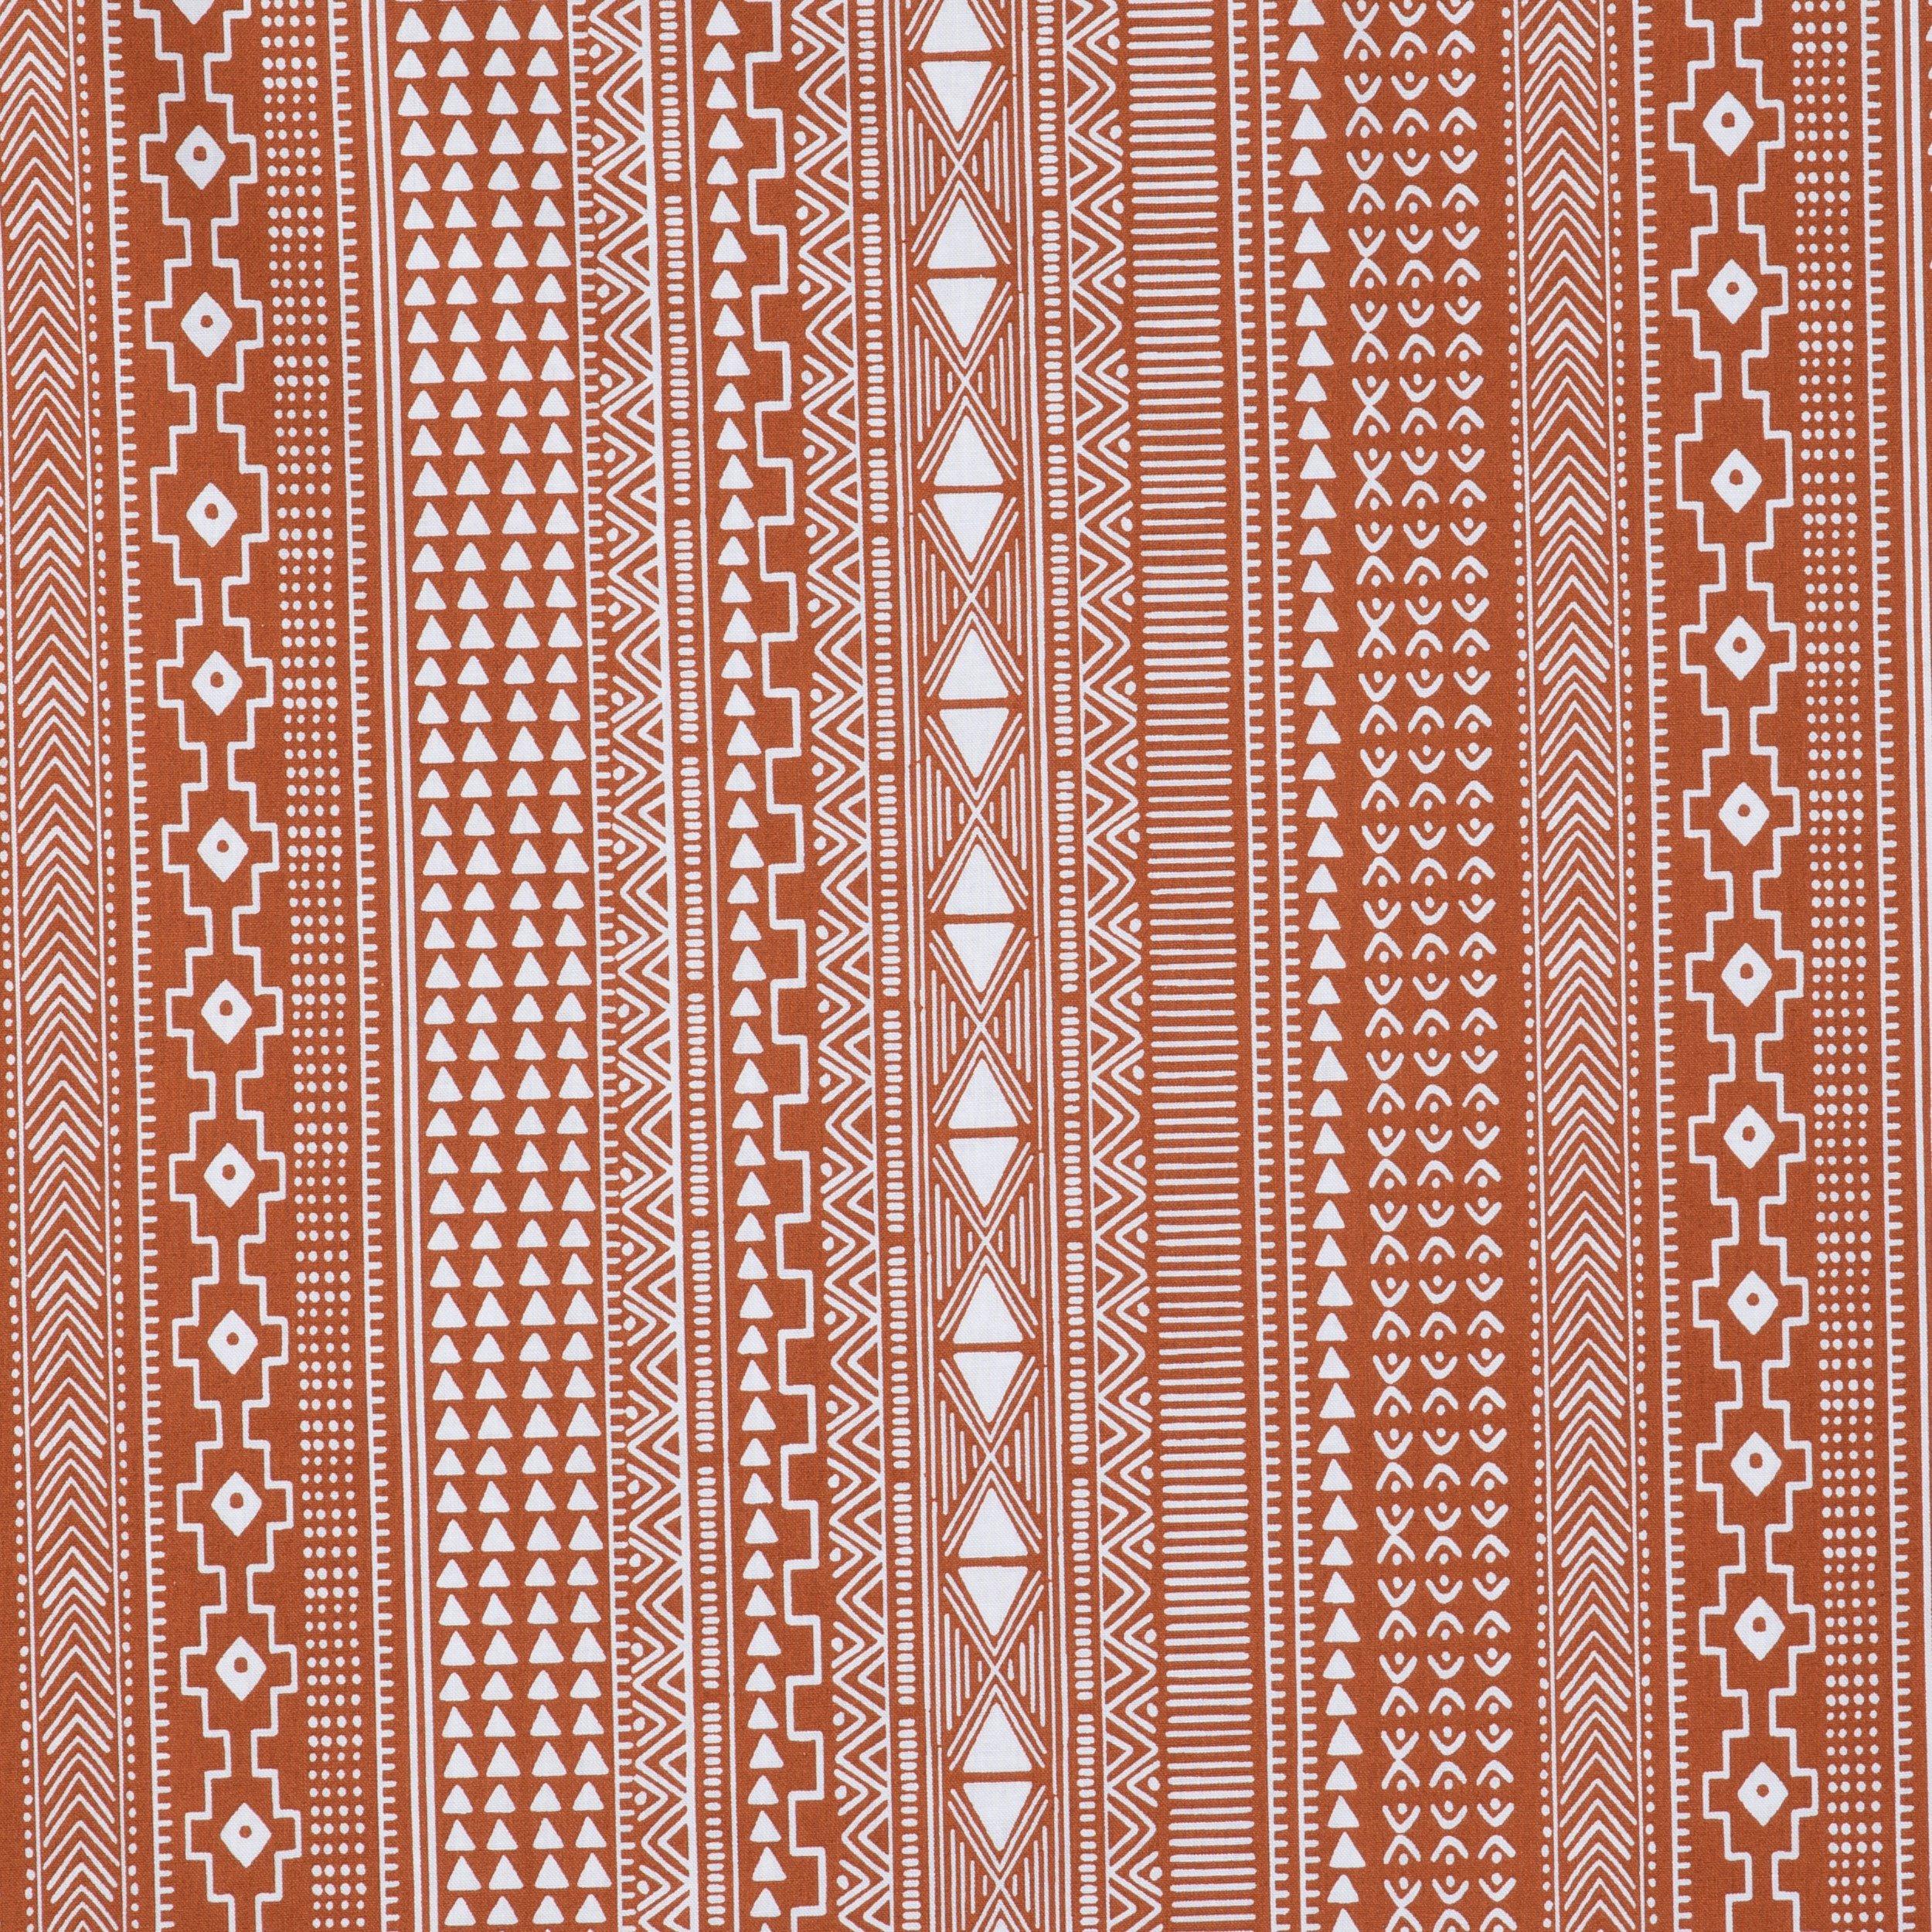 Tiger Stripe Apparel Fabric, Hobby Lobby